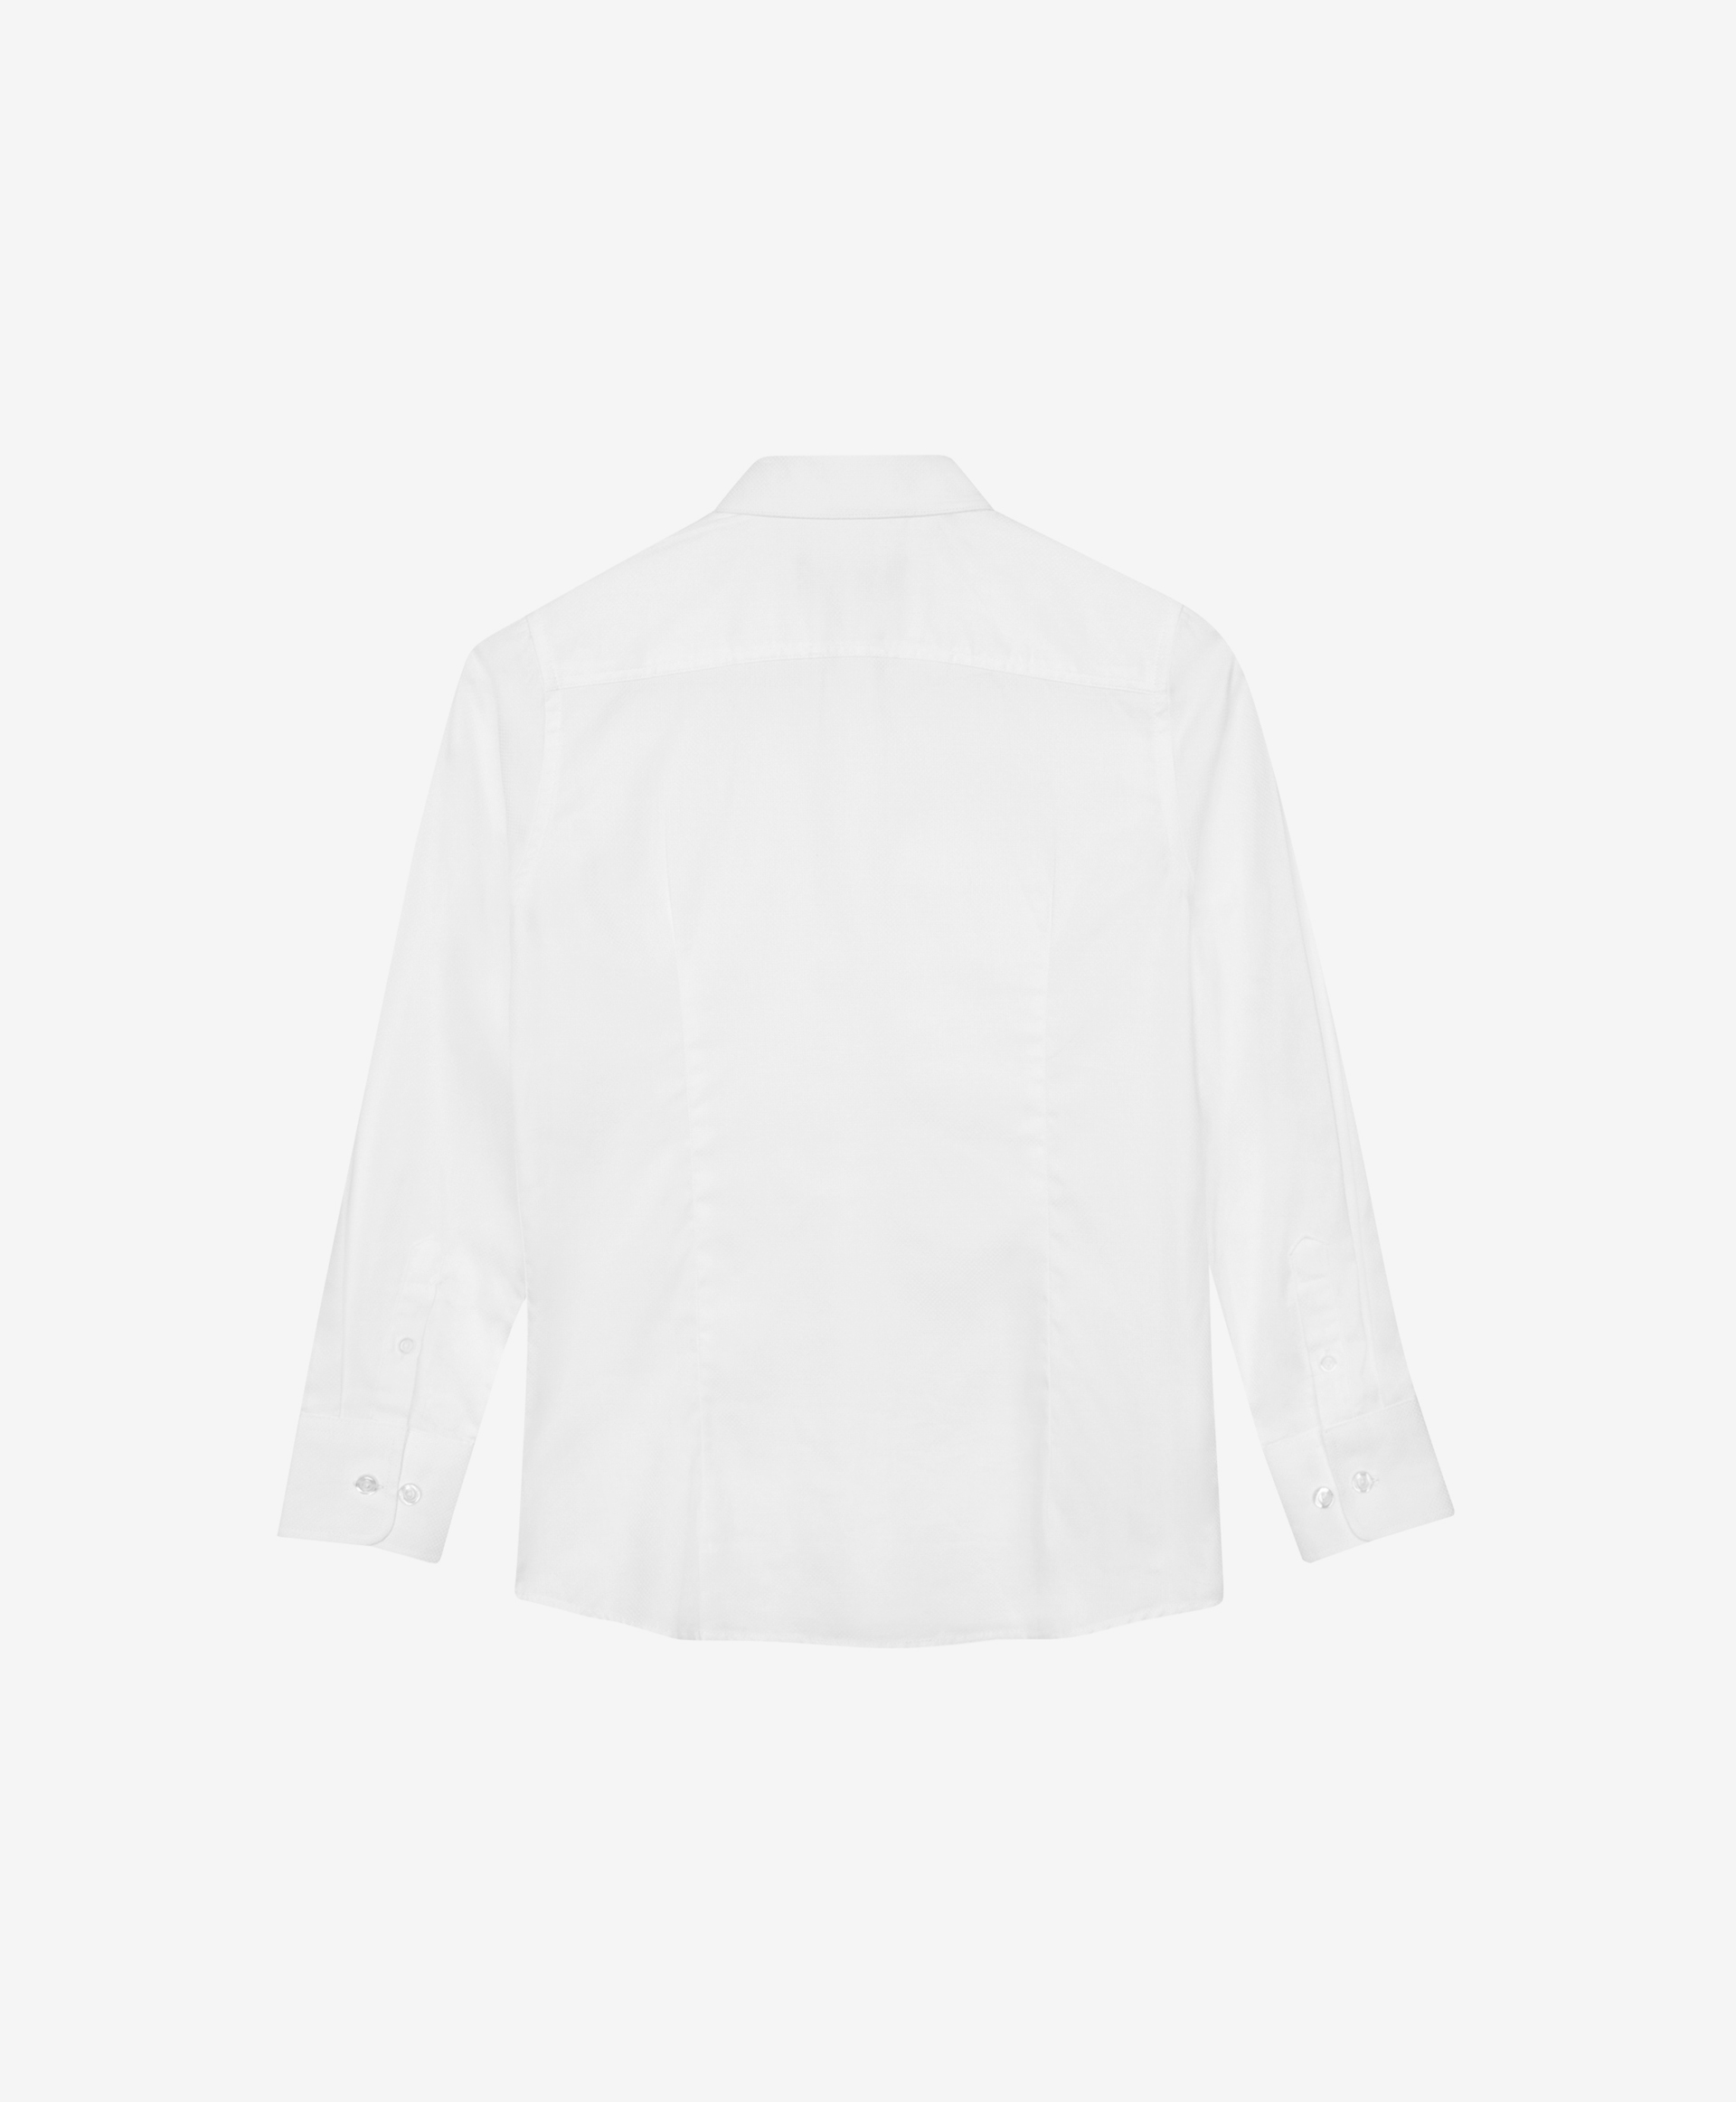 Сорочка белая с длинным рукавом Gulliver 200GSBC2302, размер 128, цвет белый - фото 4